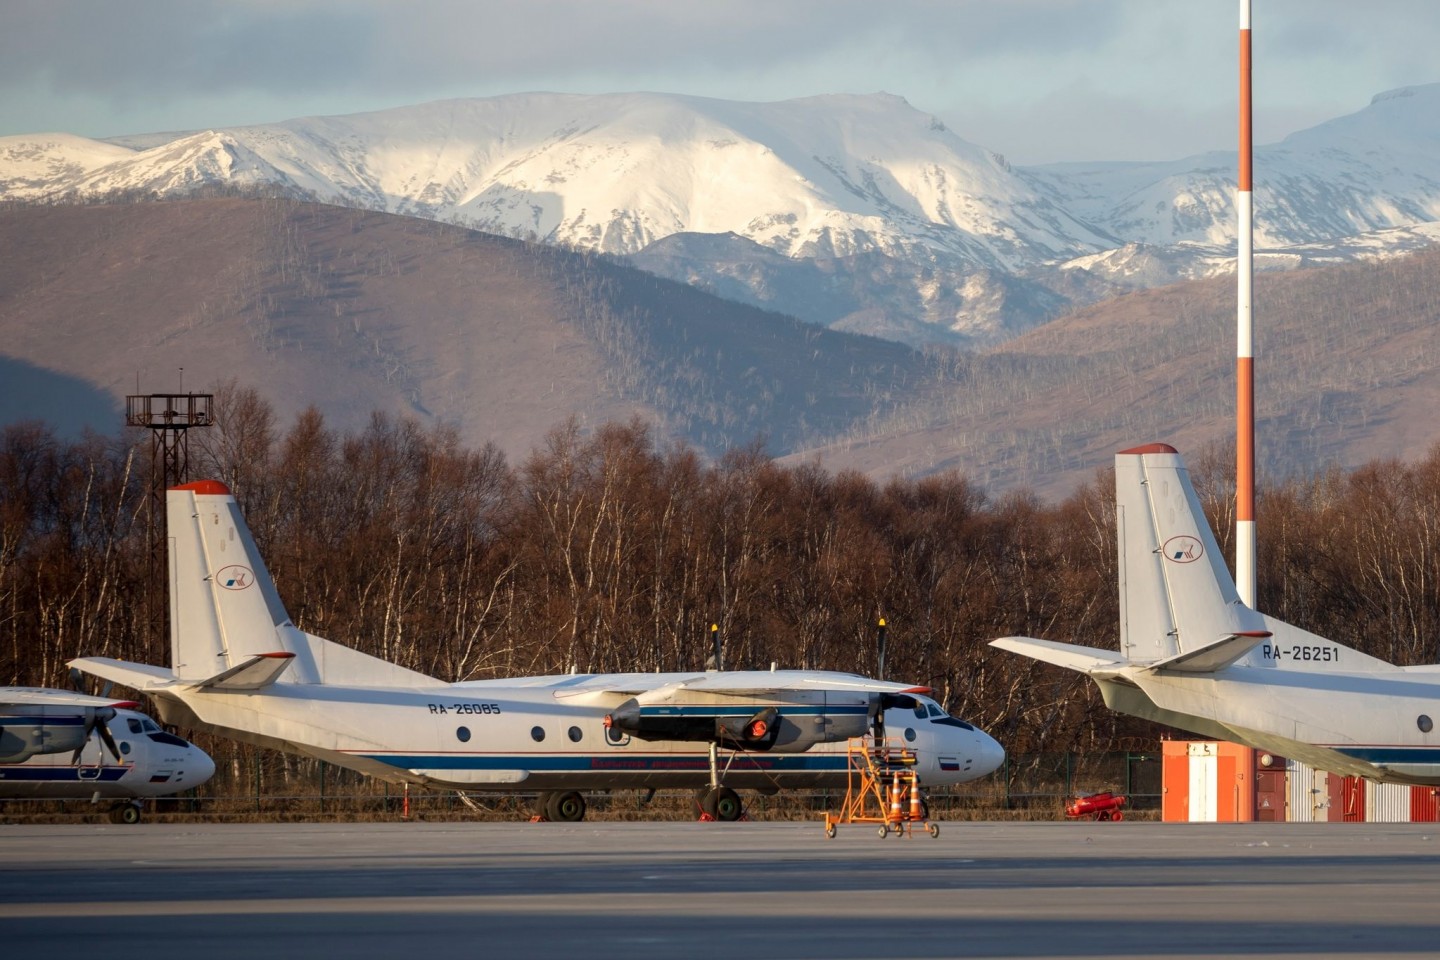 Passagierflugzeug vom Typ An-26 mit der gleichen Bordnummer wie das vermisste Flugzeug 2020 auf dem Flughafen Elizovo.